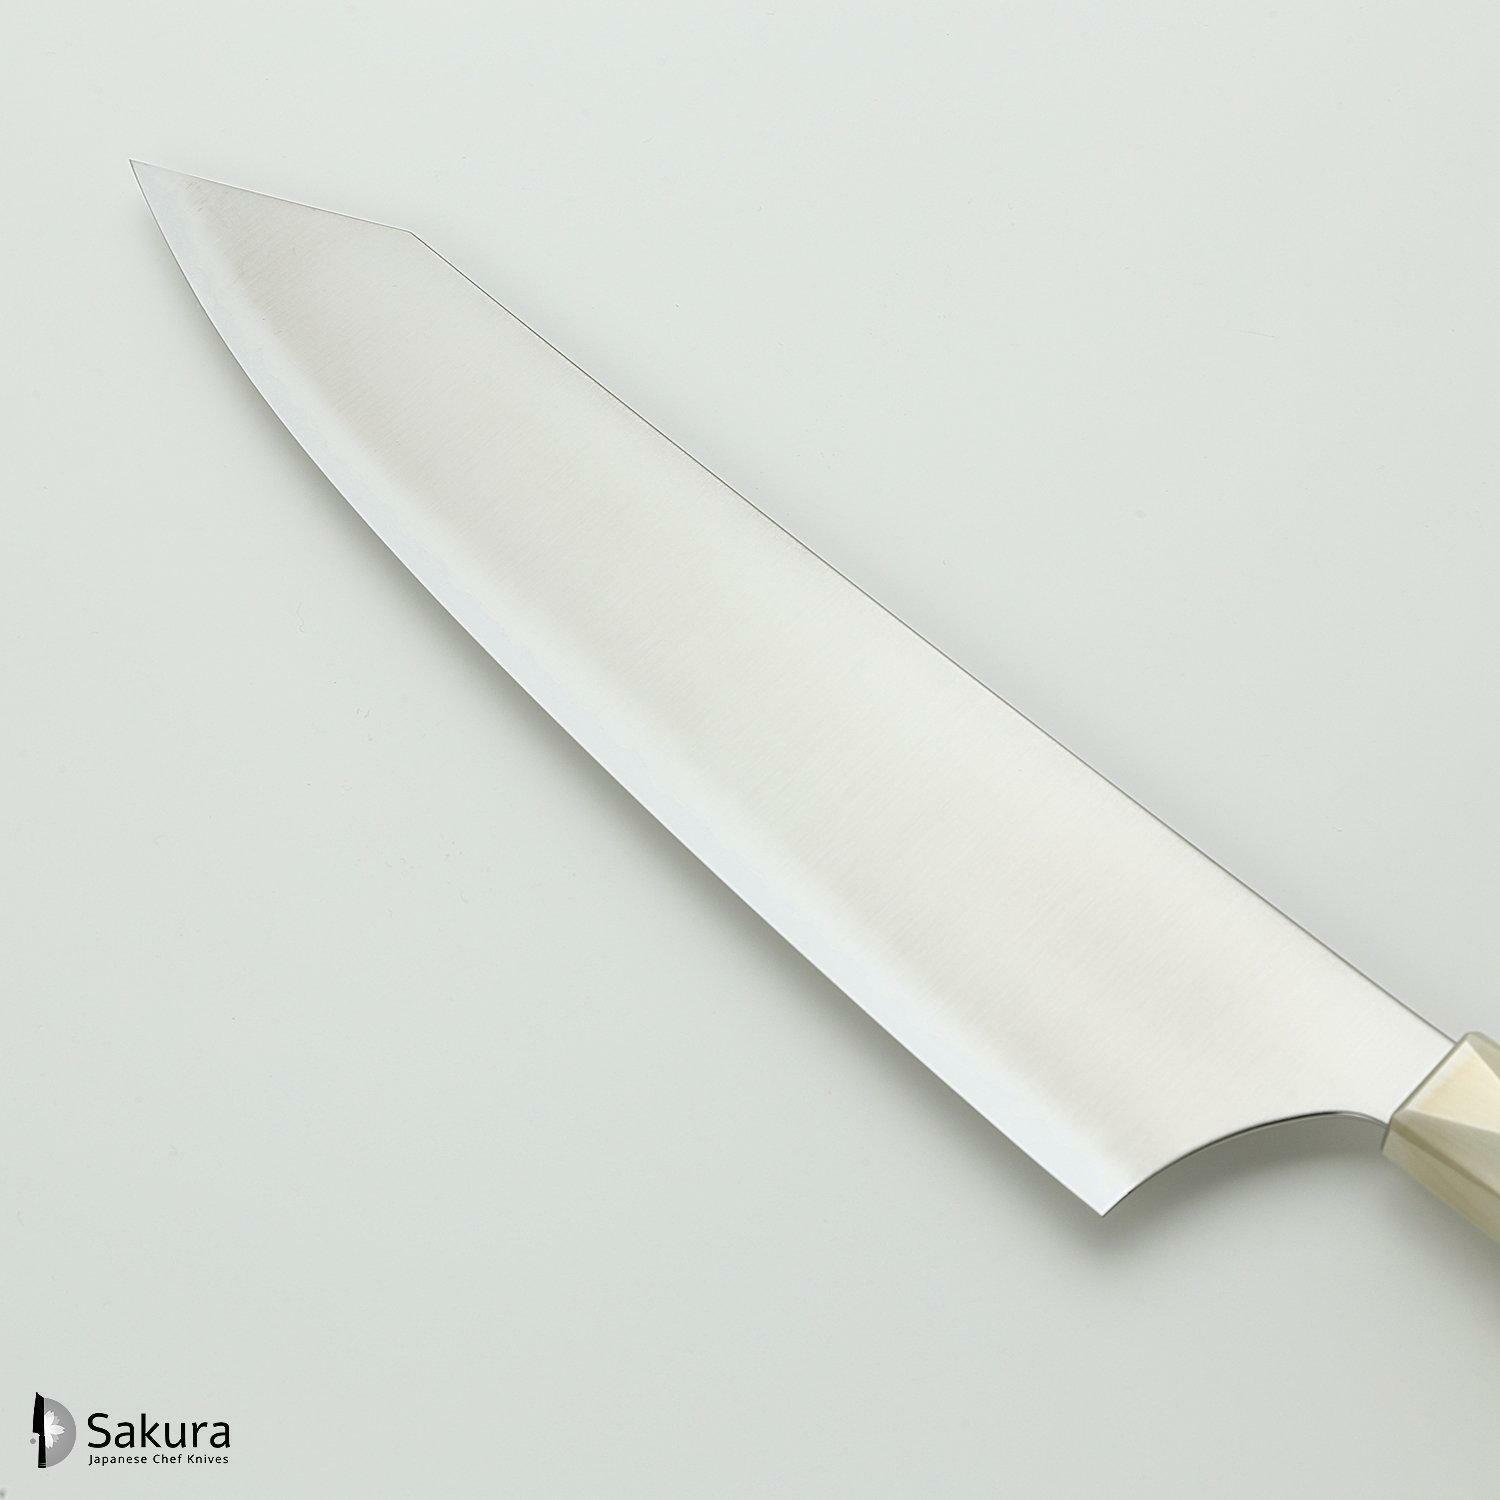 סכין שף רב-תכליתית גִּיוּטוֹ 240מ״מ מחושלת בעבודת יד 3 שכבות: פלדת פחמן יפנית מתקדמת מסוג Aogami Super עטופה פלדת אל-חלד גימור מט מלוטש מקוסטה זאנמאיי יפן ZBX-5007B